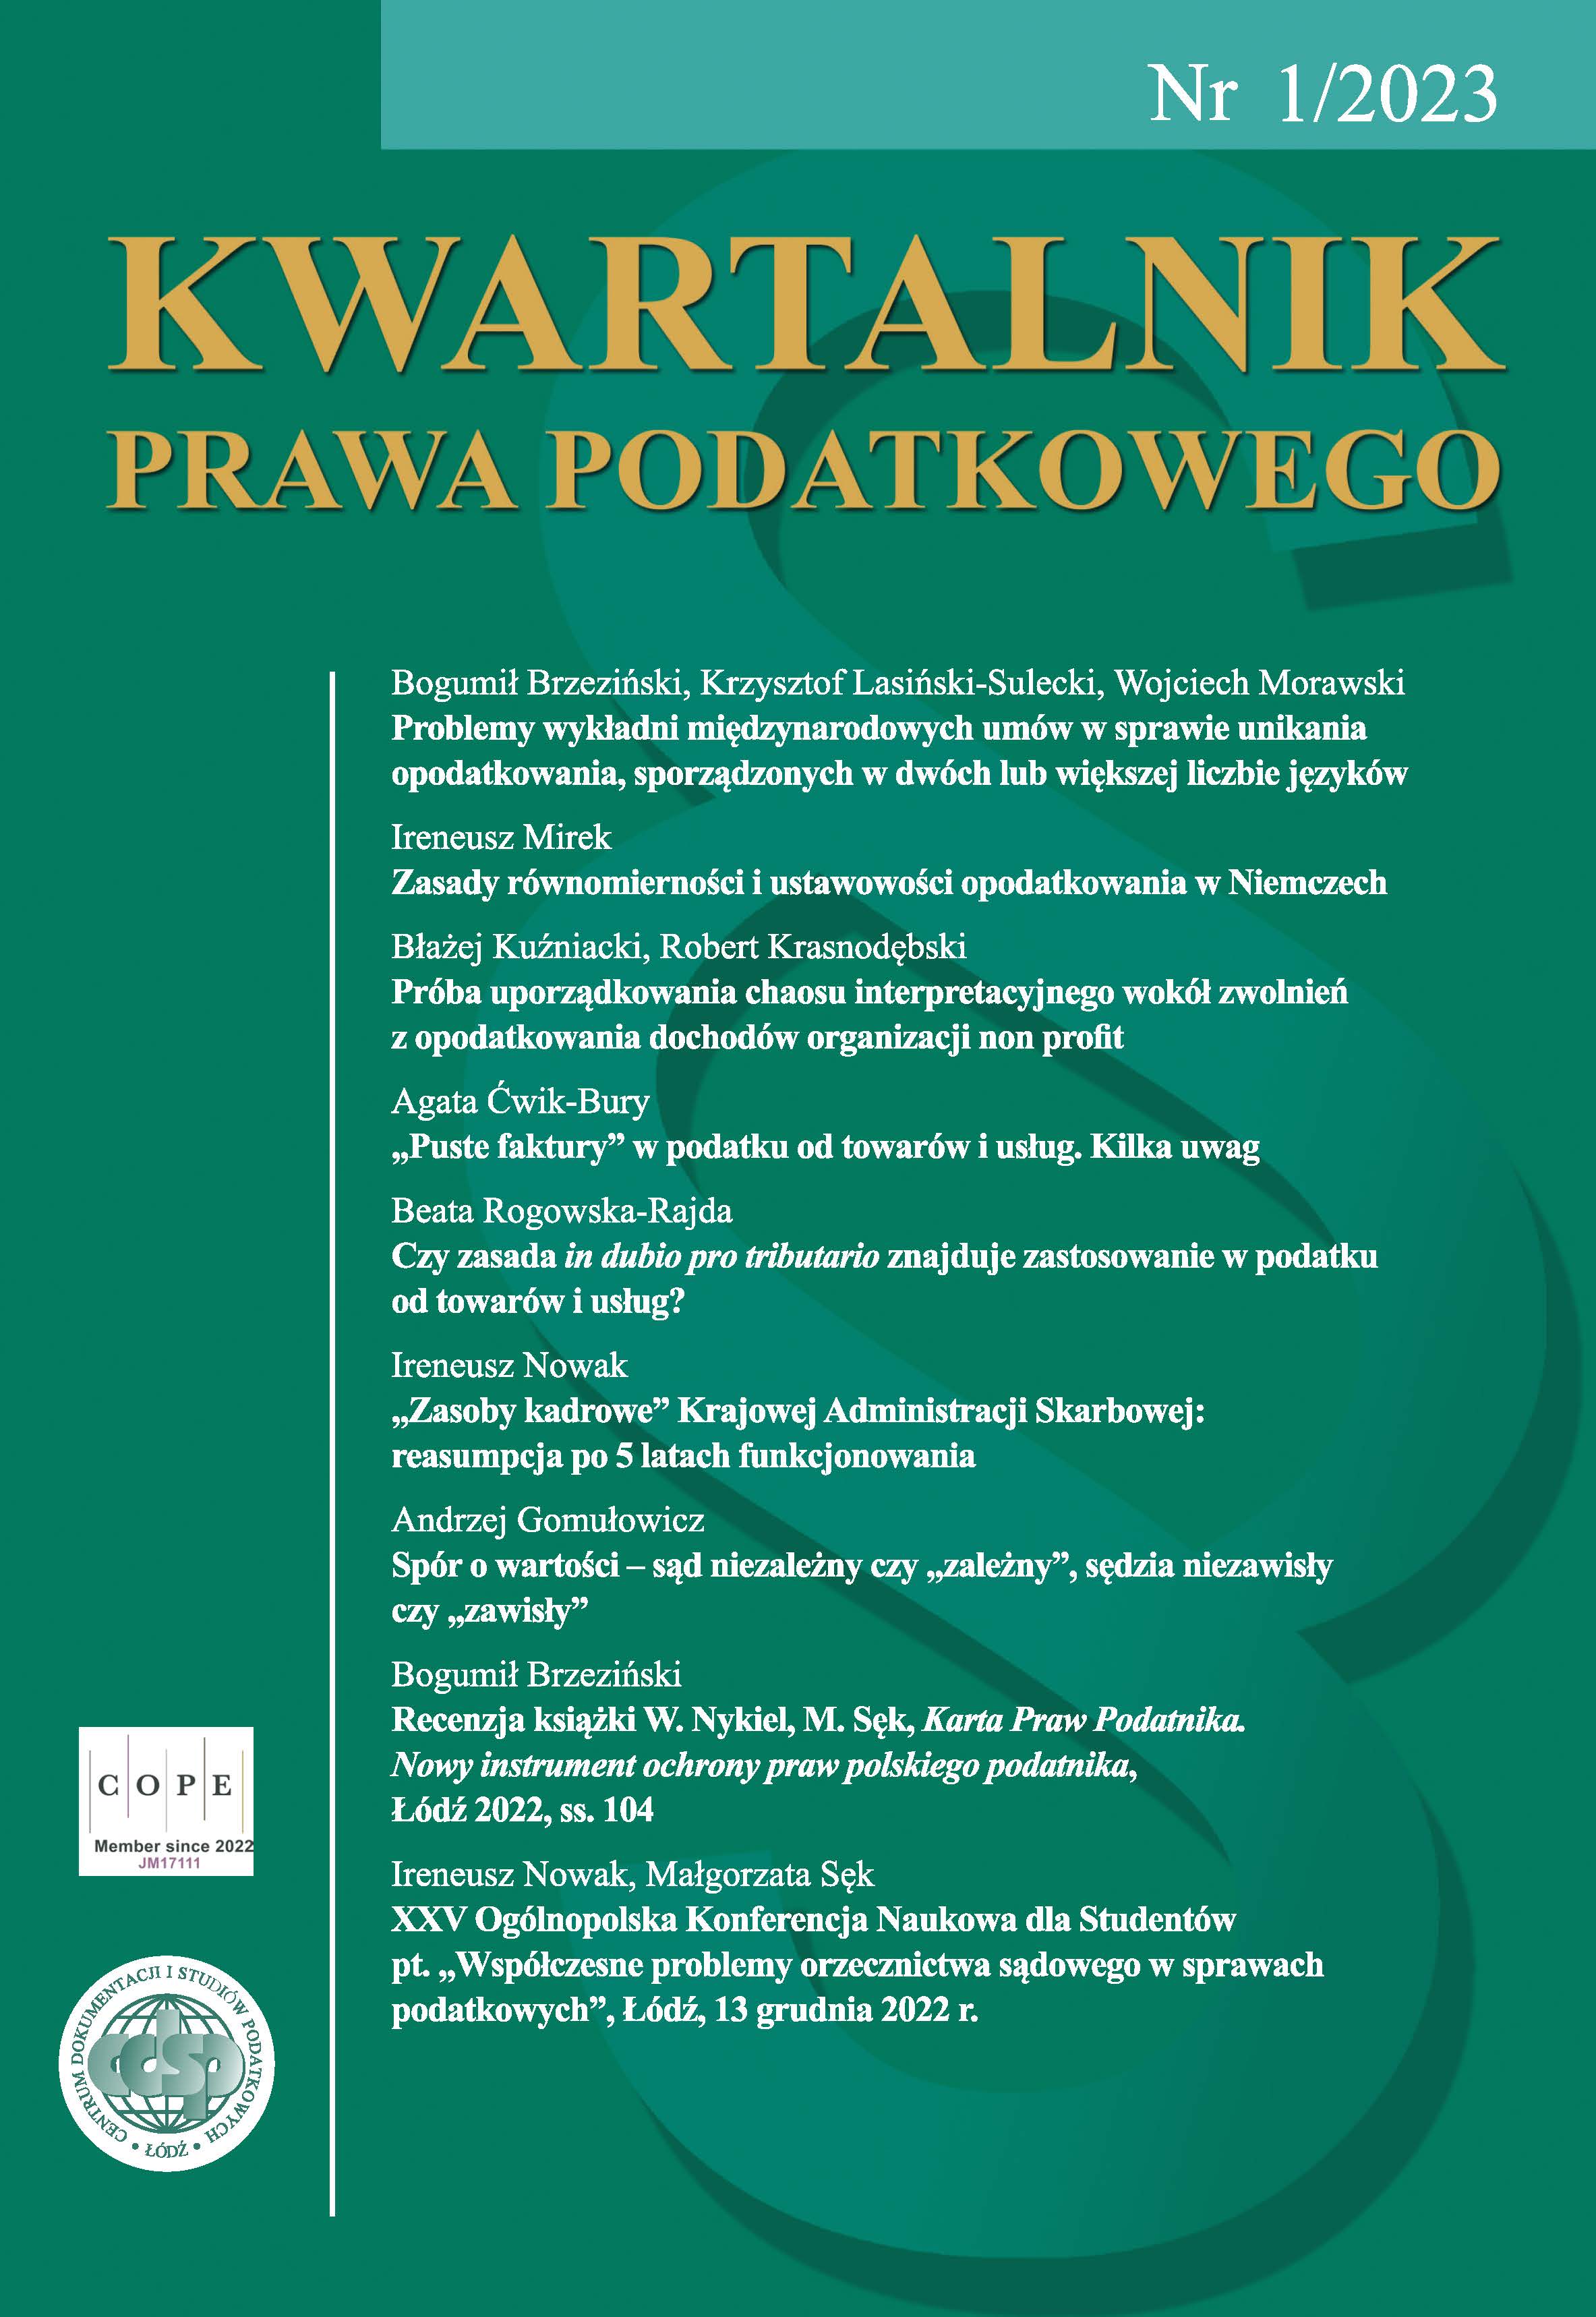 XXV National Scientific Conference for Students: „Współczesne problemy orzecznictwa sądowego w sprawach podatkowych”, Łódź, December 13, 2022. Cover Image